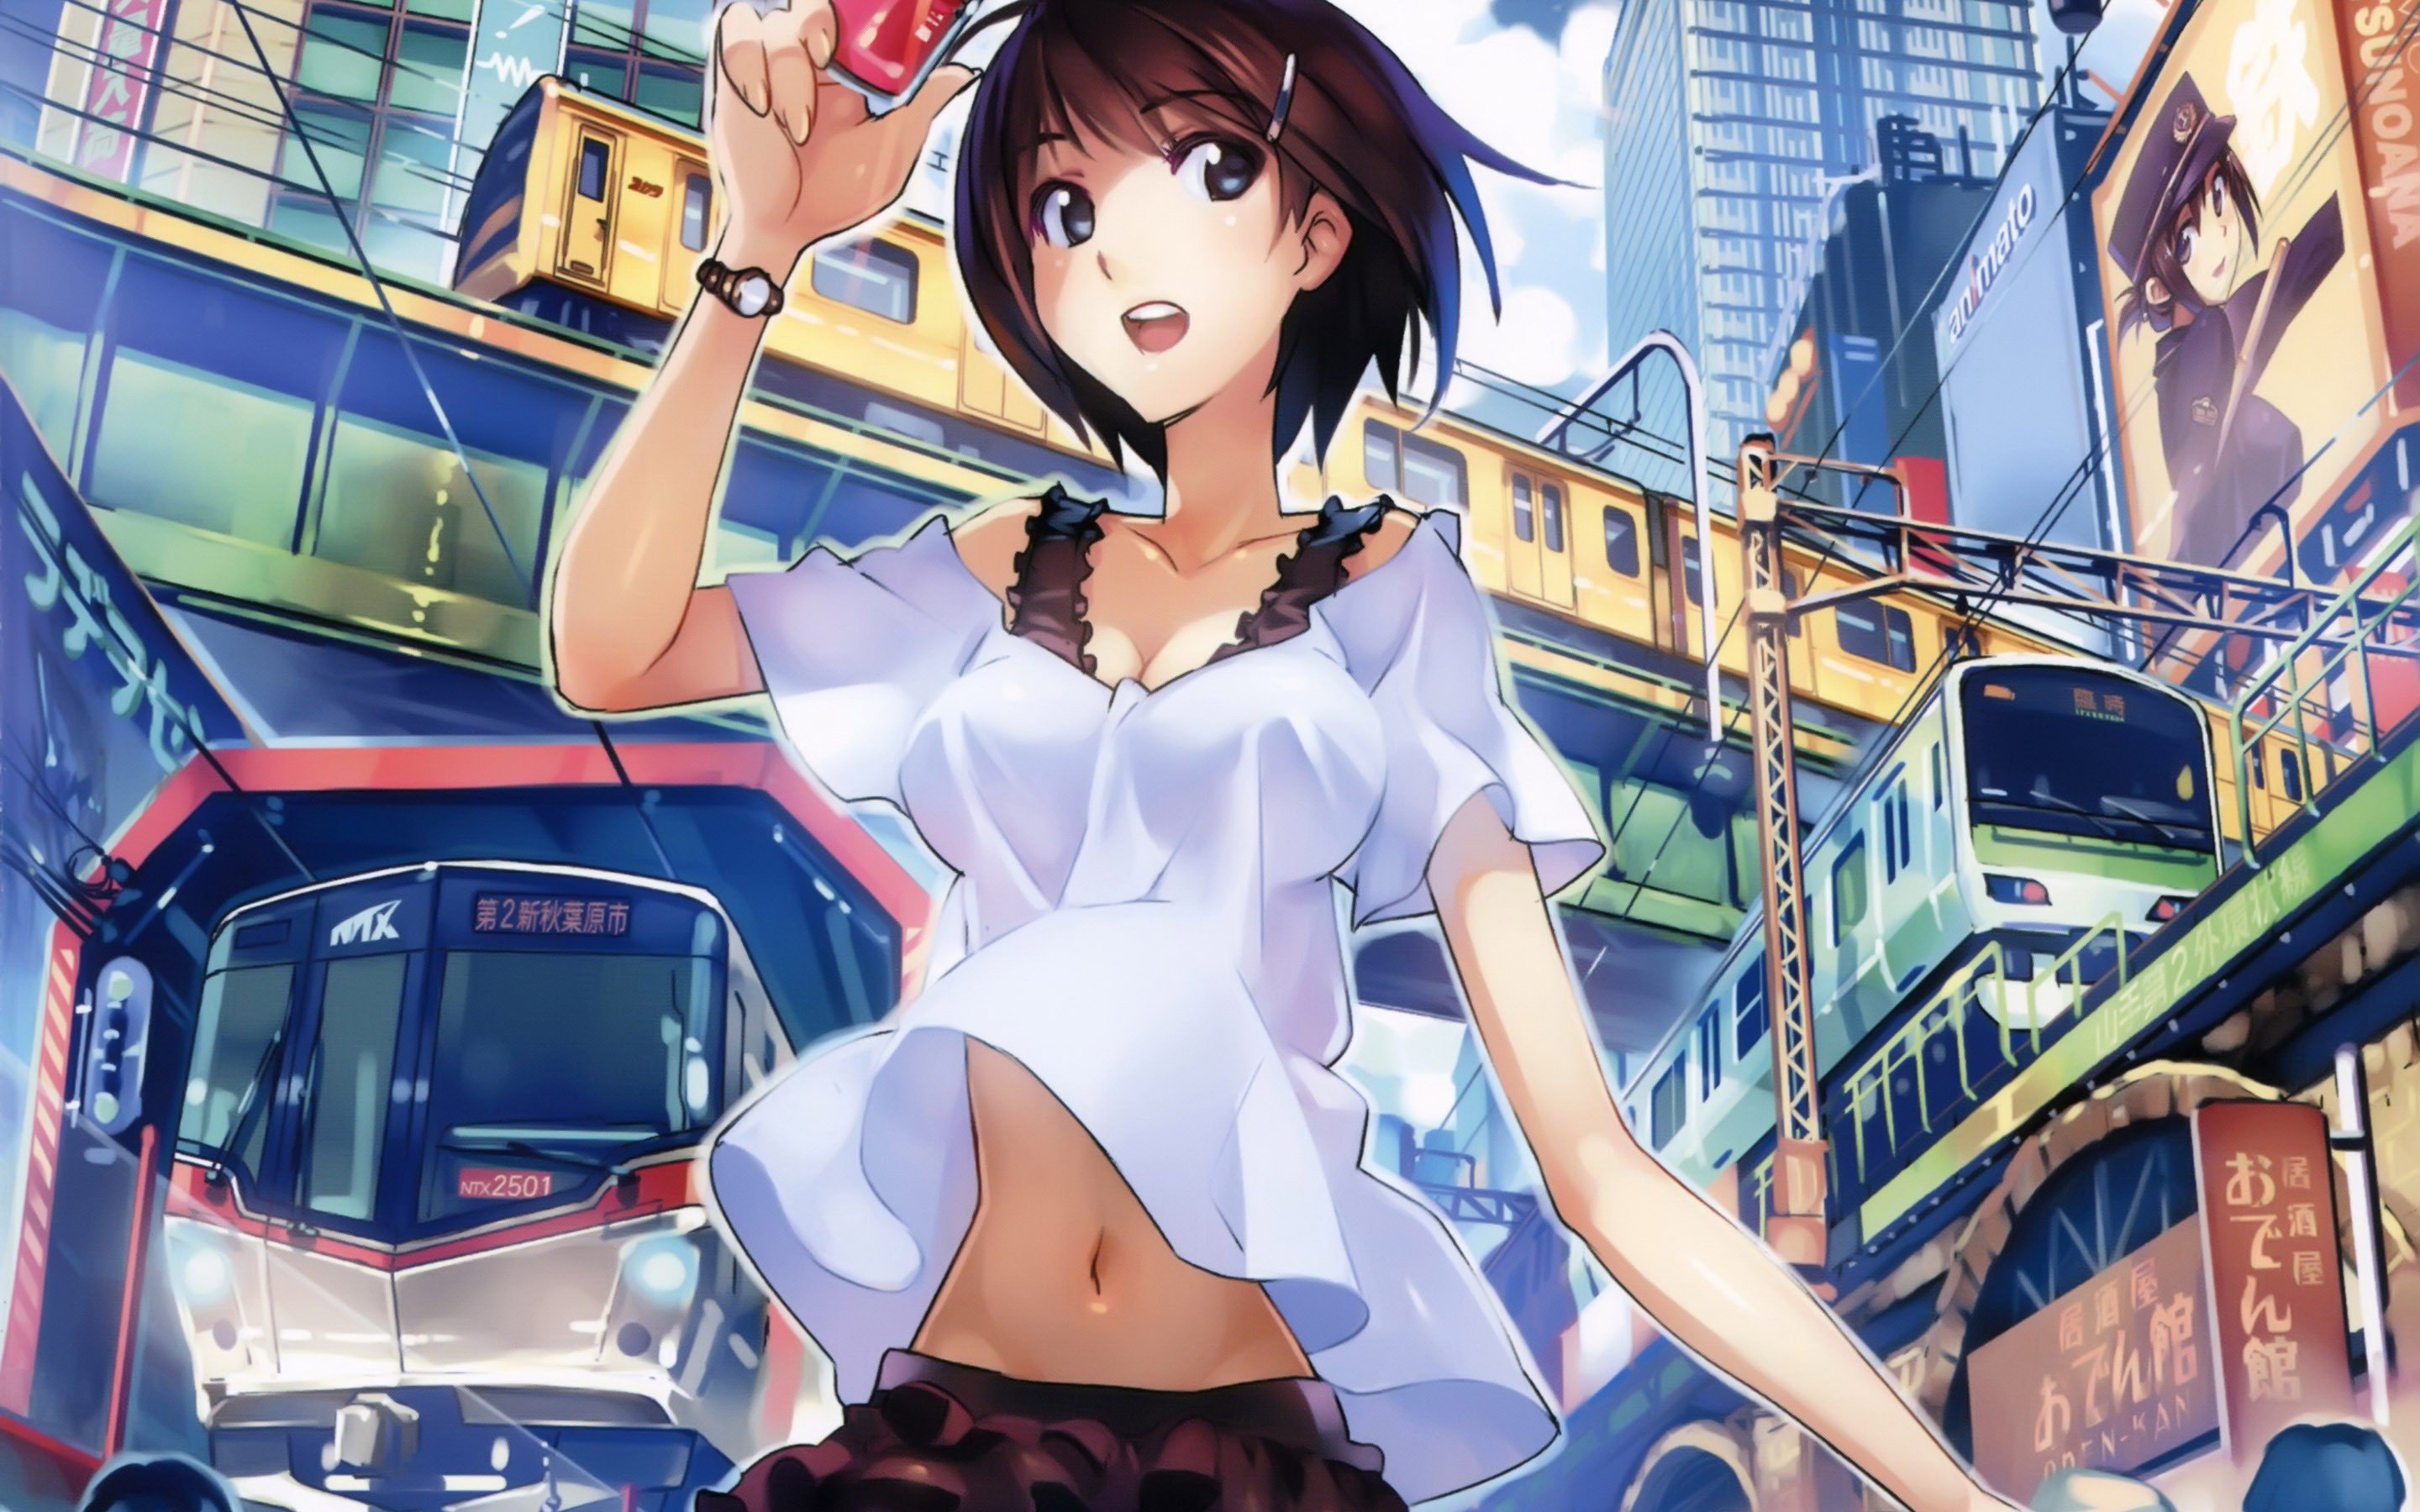 manga, Anime girls, Rail Wars Wallpaper